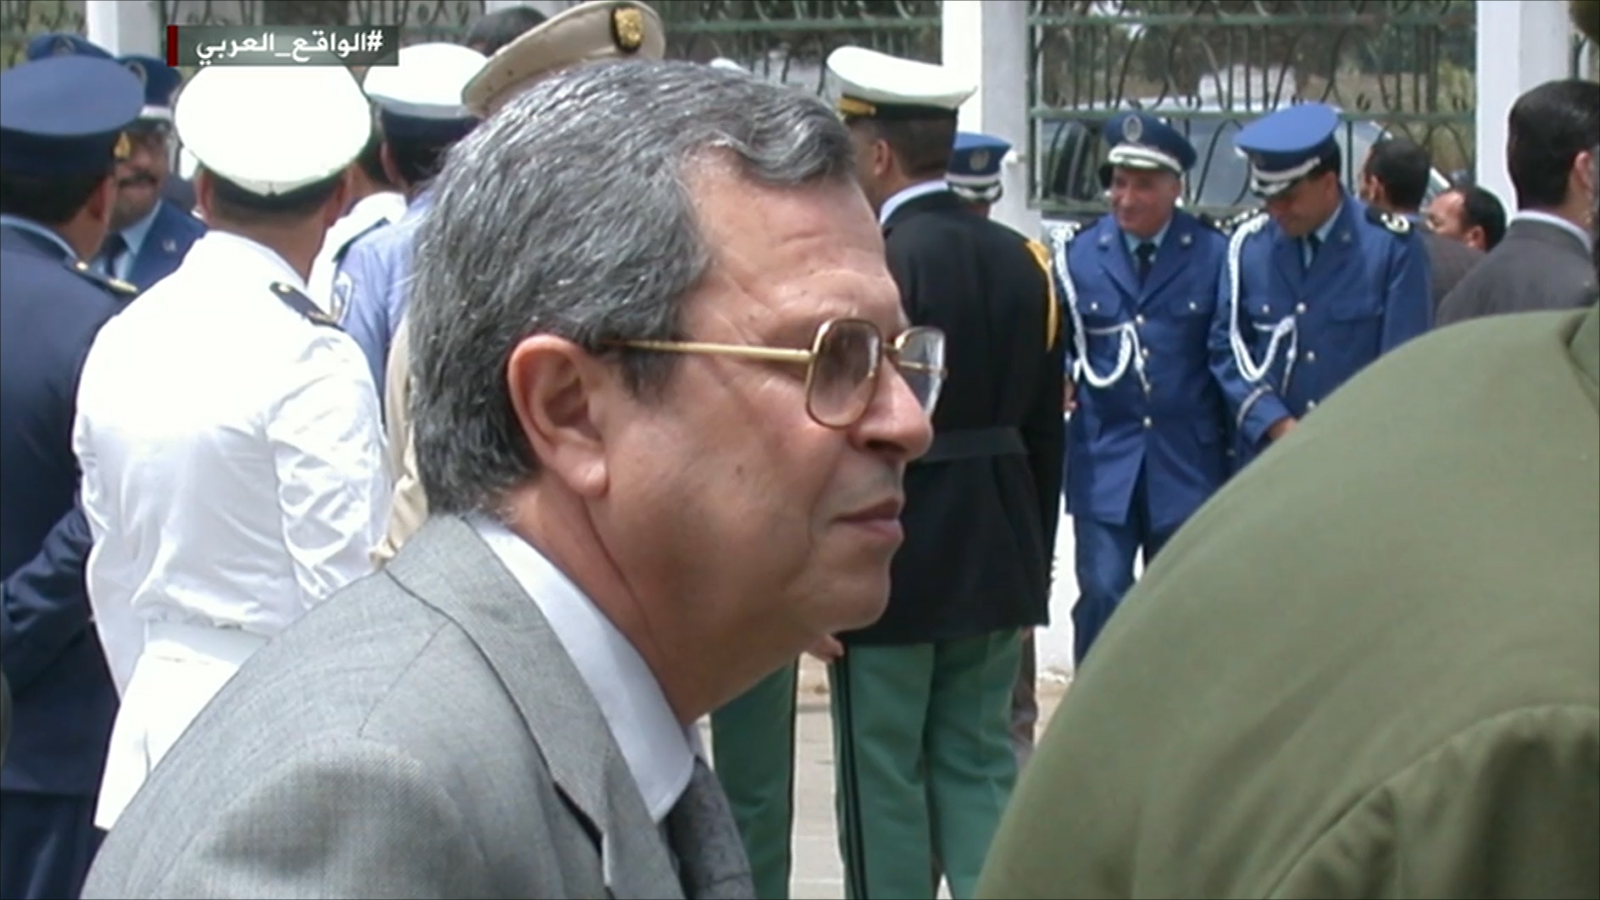 الحد من نفوذ الجيش في السياسة بدأ بإقالة مدير المخابرات العامة الجنرال توفيق في 2015